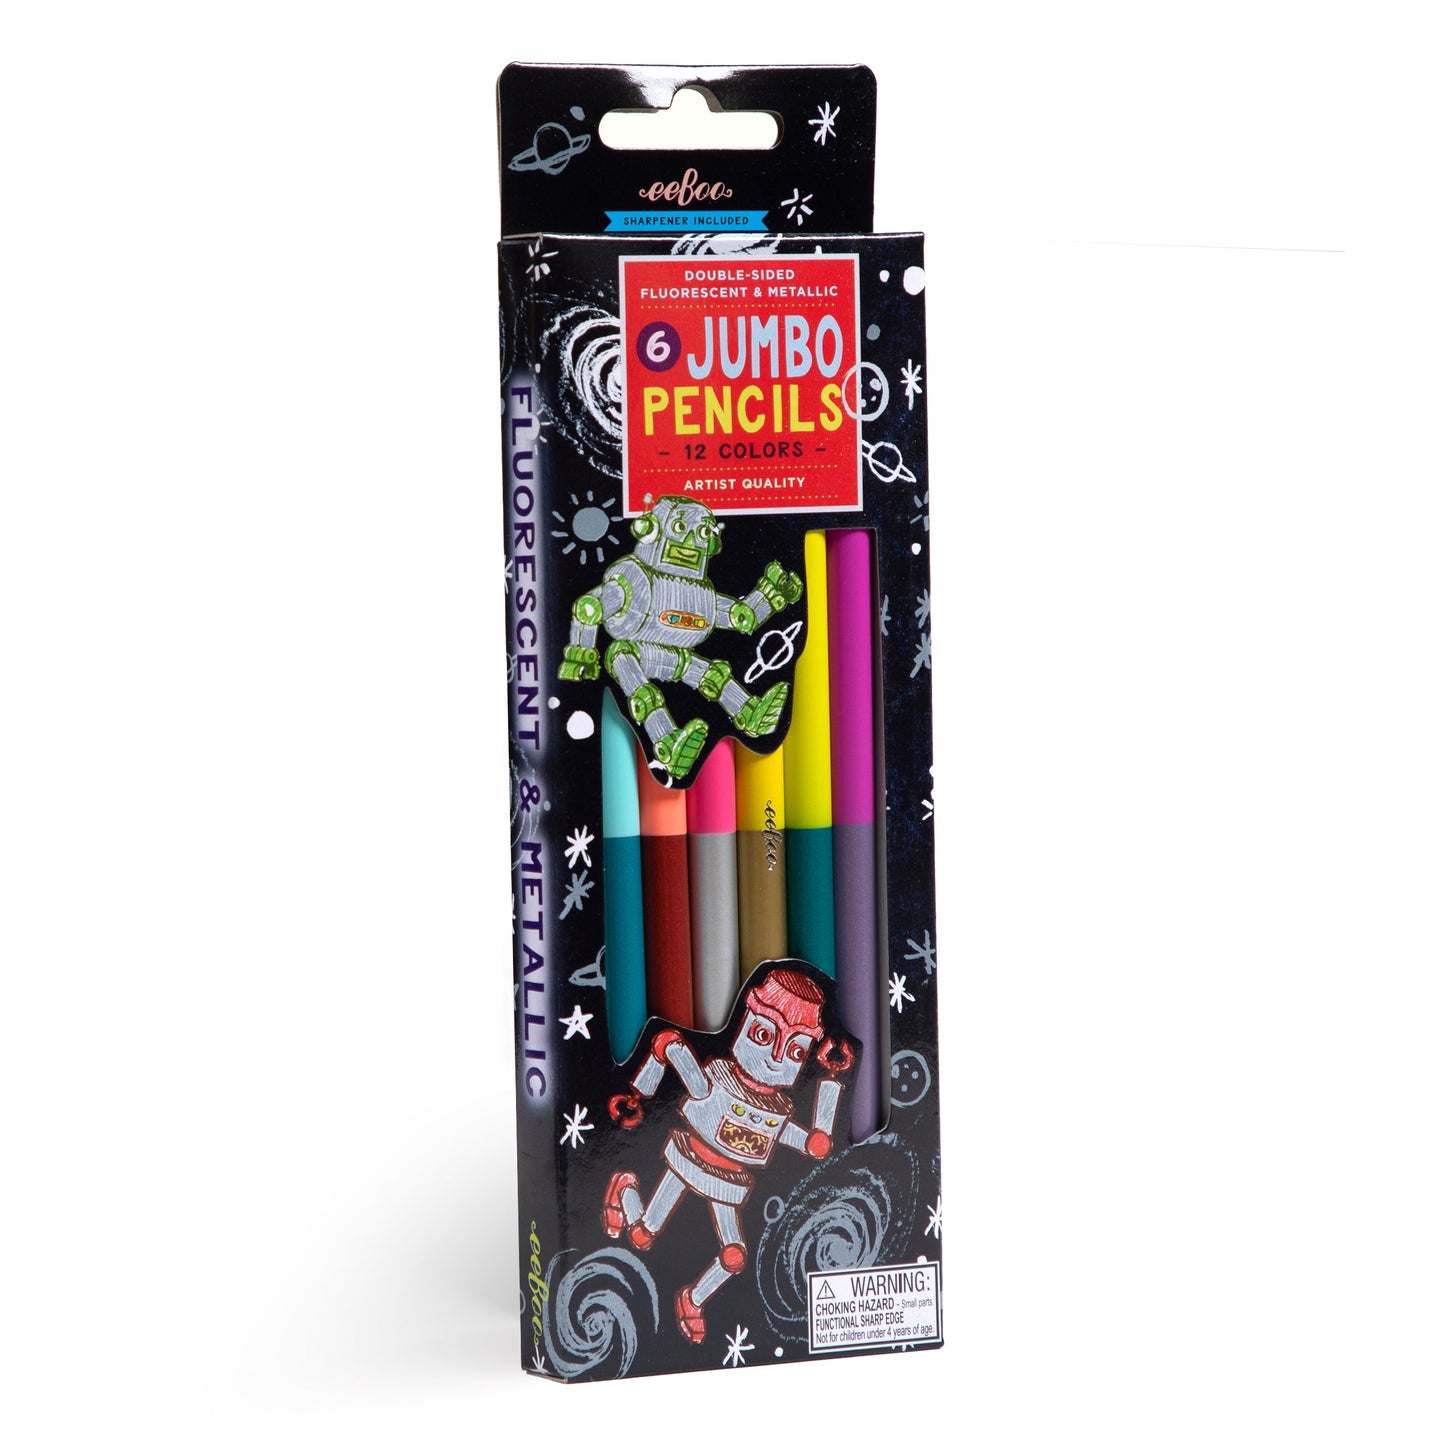 Silver Robot 6 Jumbo Special Pencils by eeBoo | Unique Fun Gifts